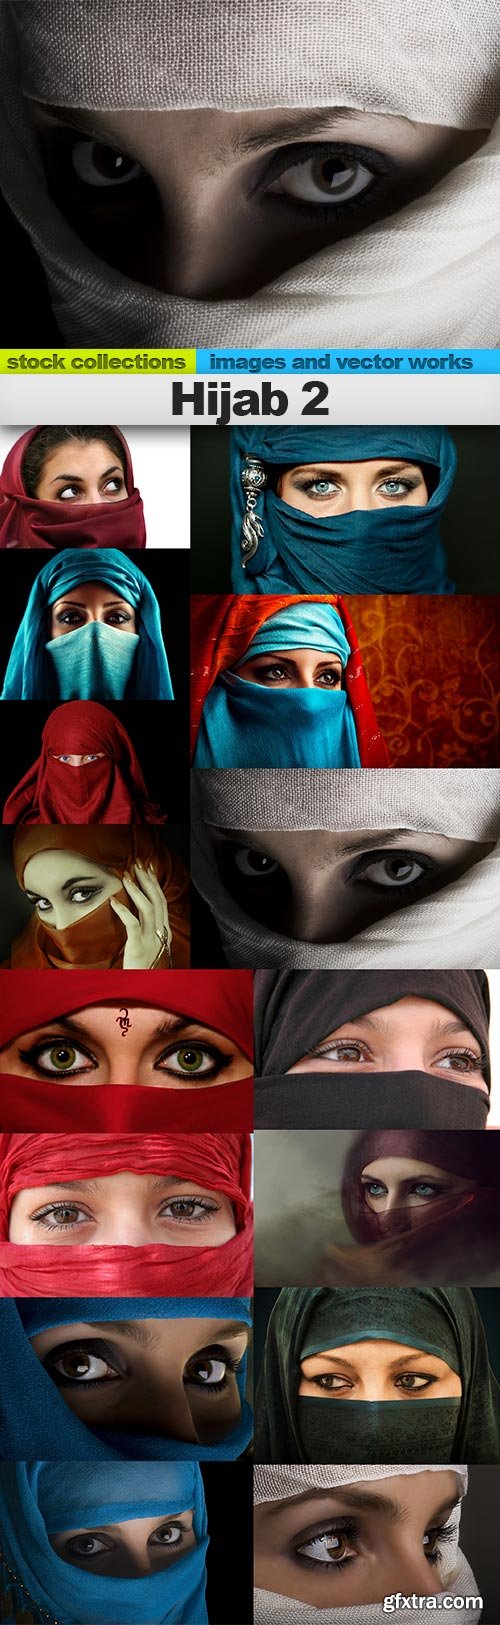 Hijab 2, 15 x UHQ JPEG